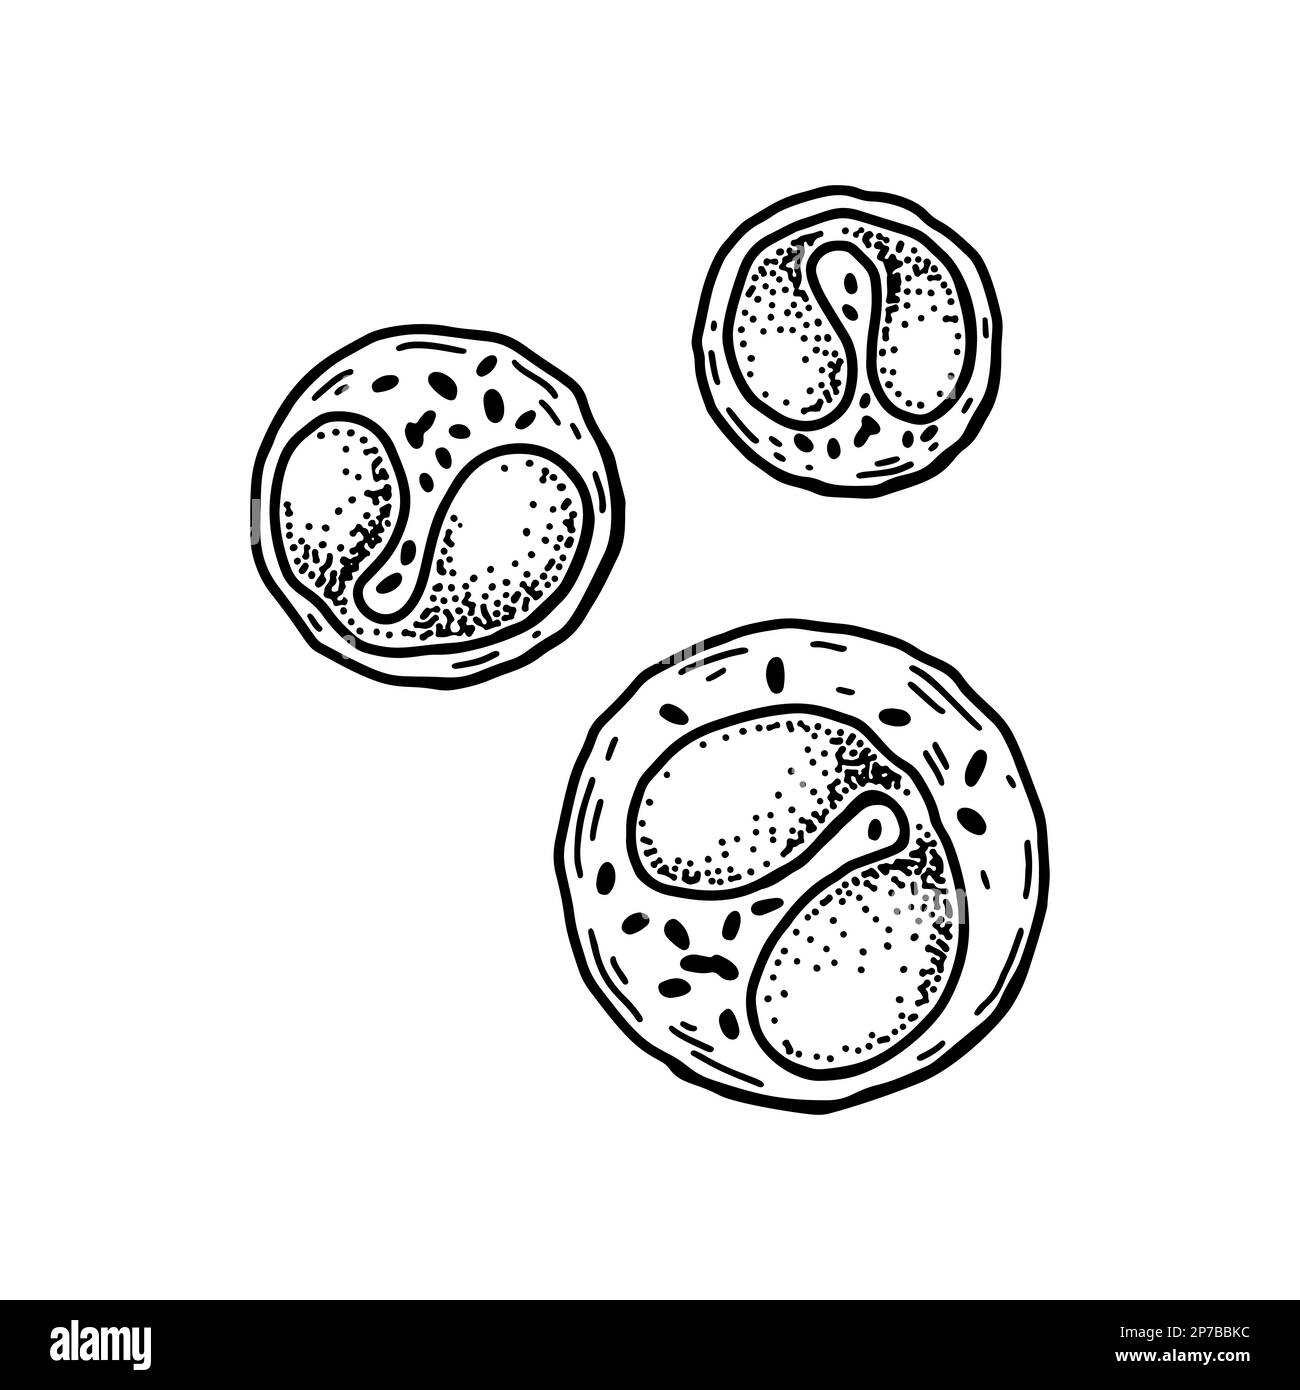 Glóbulos blancos de leucocitos eosinófilos aislados sobre fondo blanco. Dibujado a mano ilustración vectorial de microbiología científica en estilo de boceto Ilustración del Vector